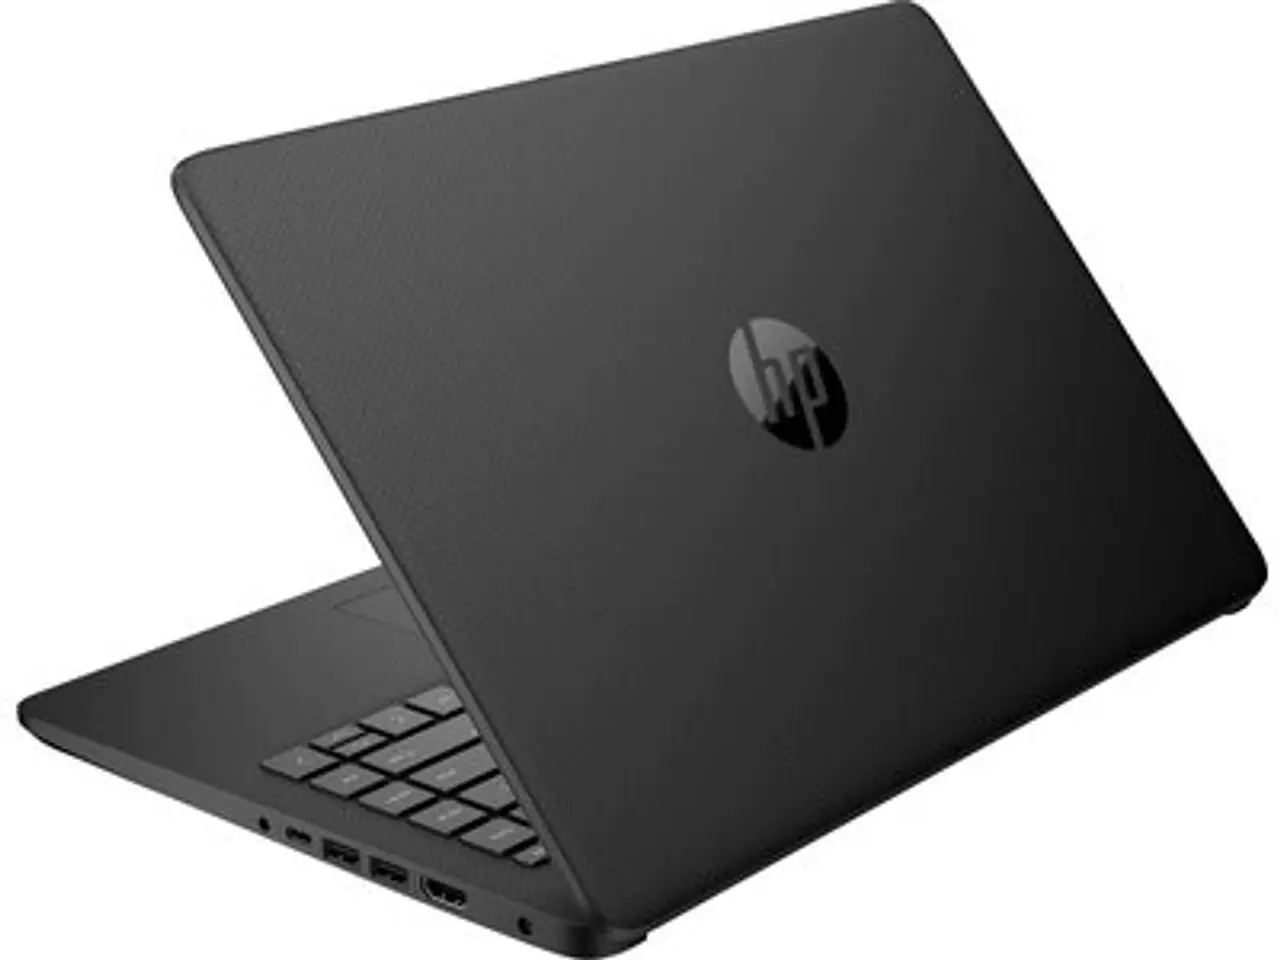 hewlett packard laptop windows 10 - Which Windows 10 version is best for HP laptop